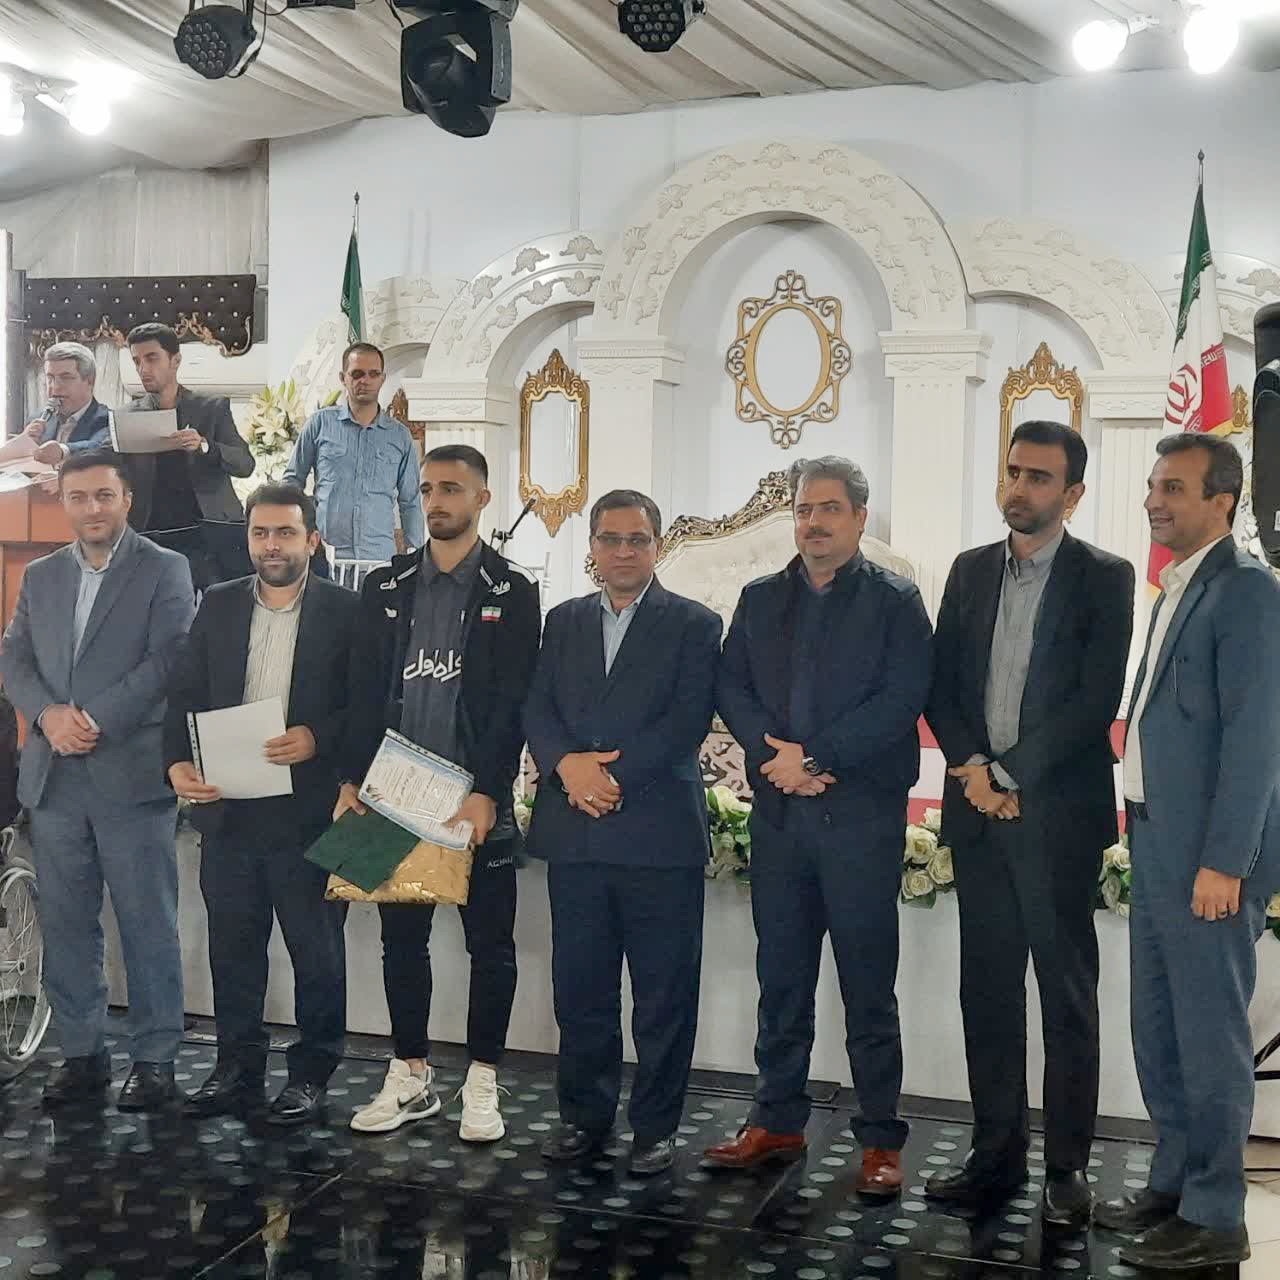 برگزاری مراسم تجلیل از قهرمان ورزشی بهشهر با حضور فرماندار شهرستان